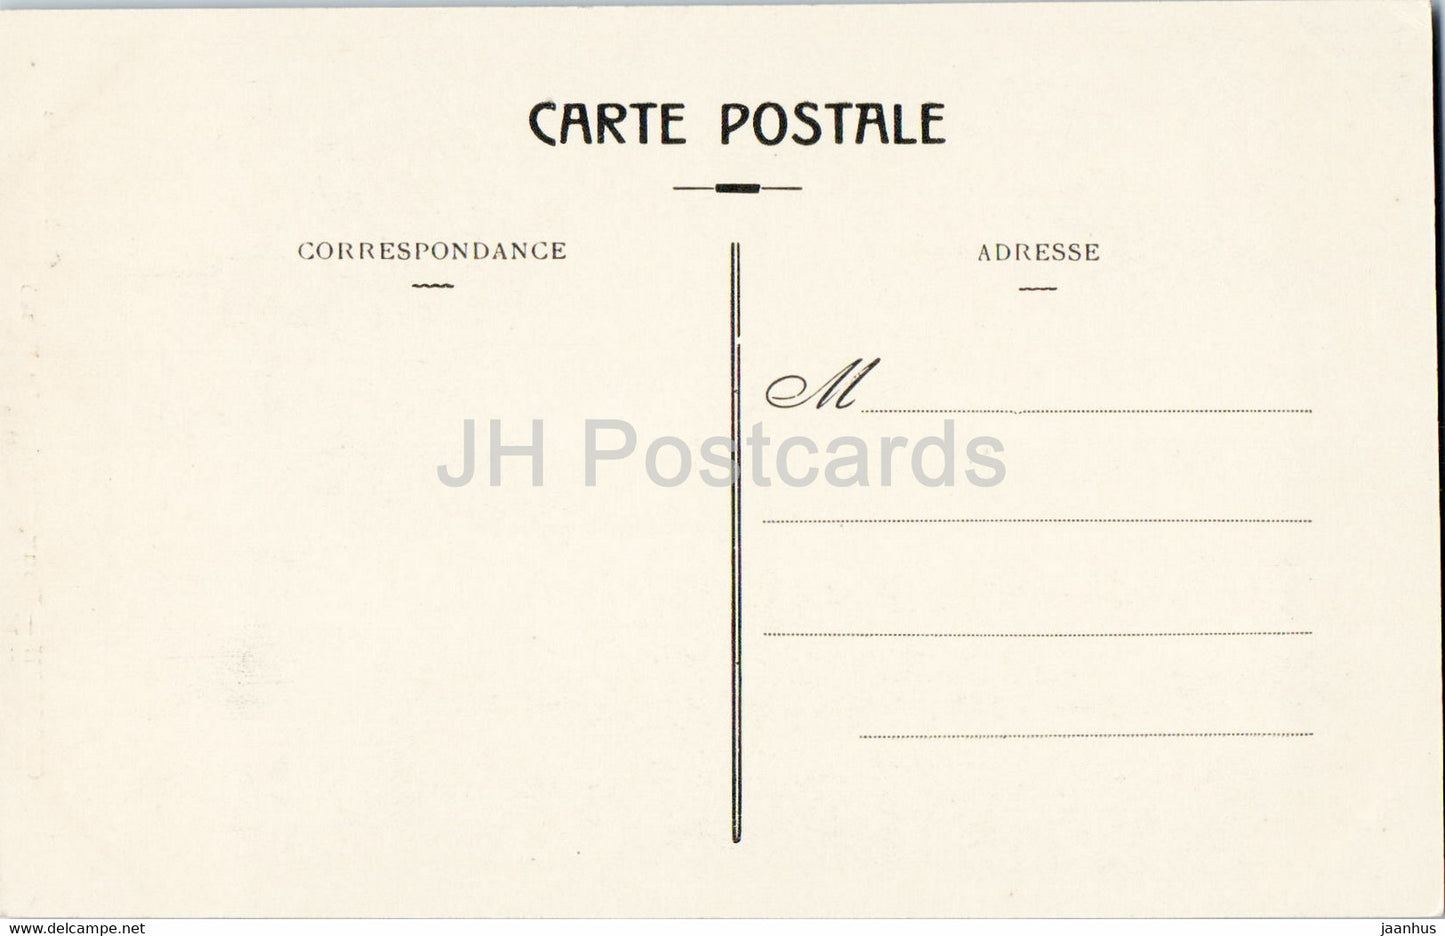 Cogolin - Deux temoins du Passe Vieux Moulin et Vieille Tour - carte postale ancienne - 1916 - France - inutilisée